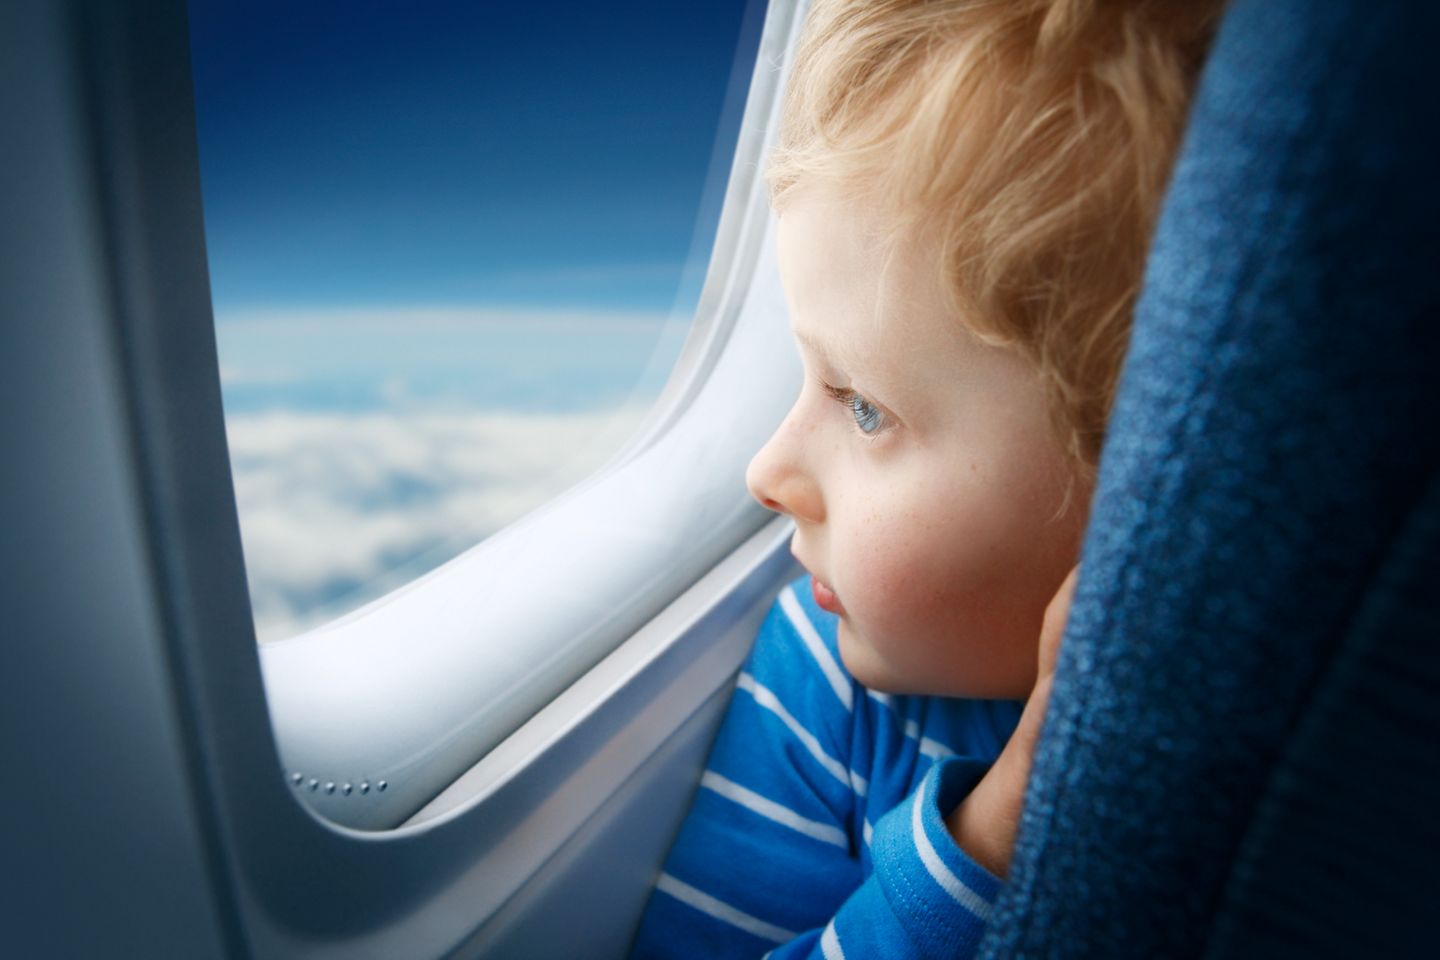 Flugreisen mit Kleinkind: Unbedingt einen Fensterplatz buchen